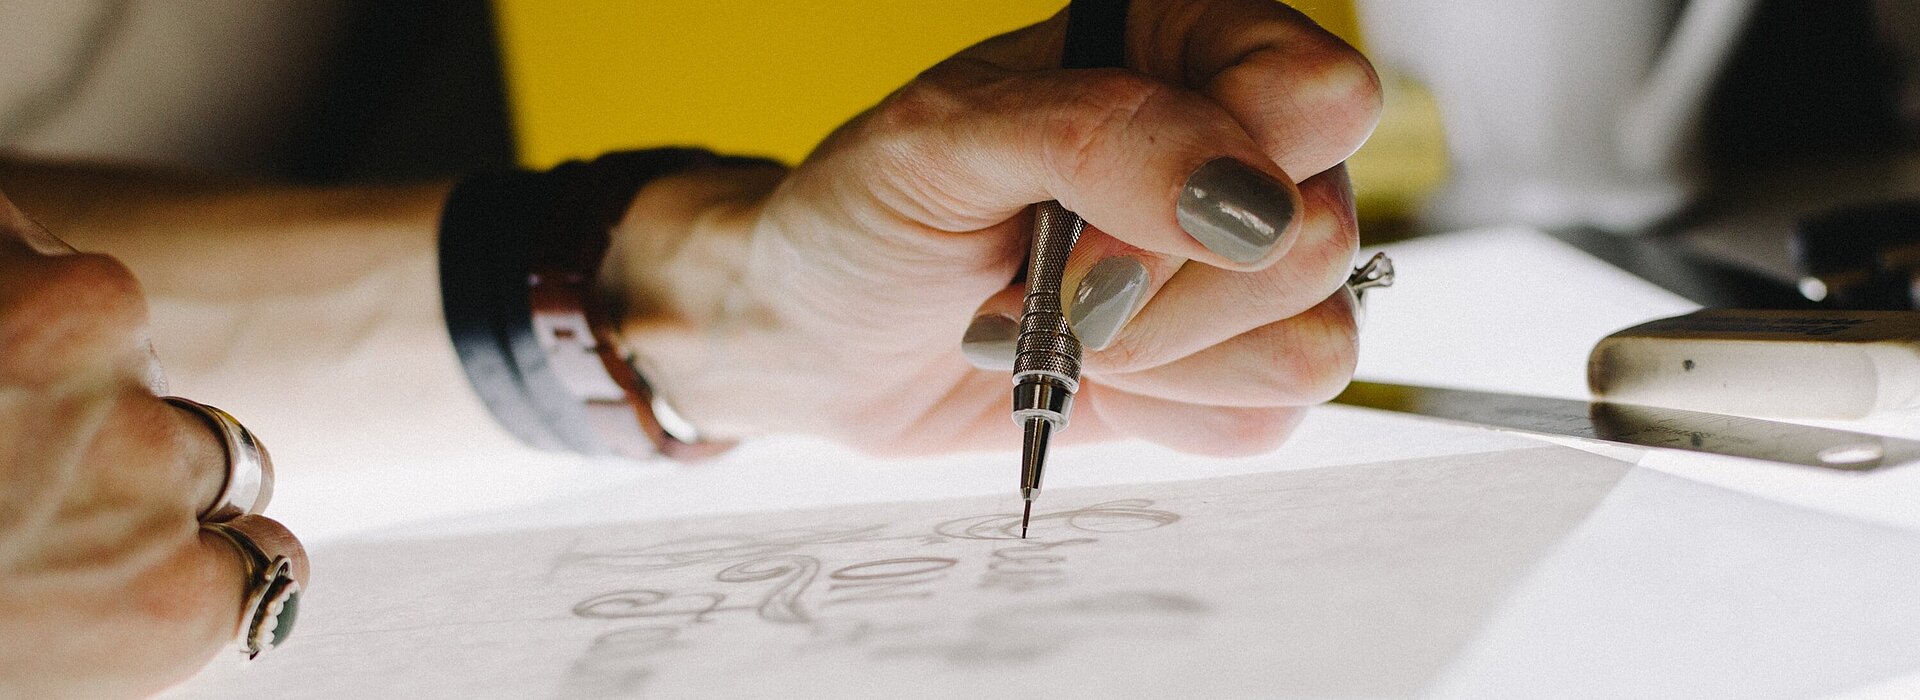 Foto de uma mão feminina desenhando.